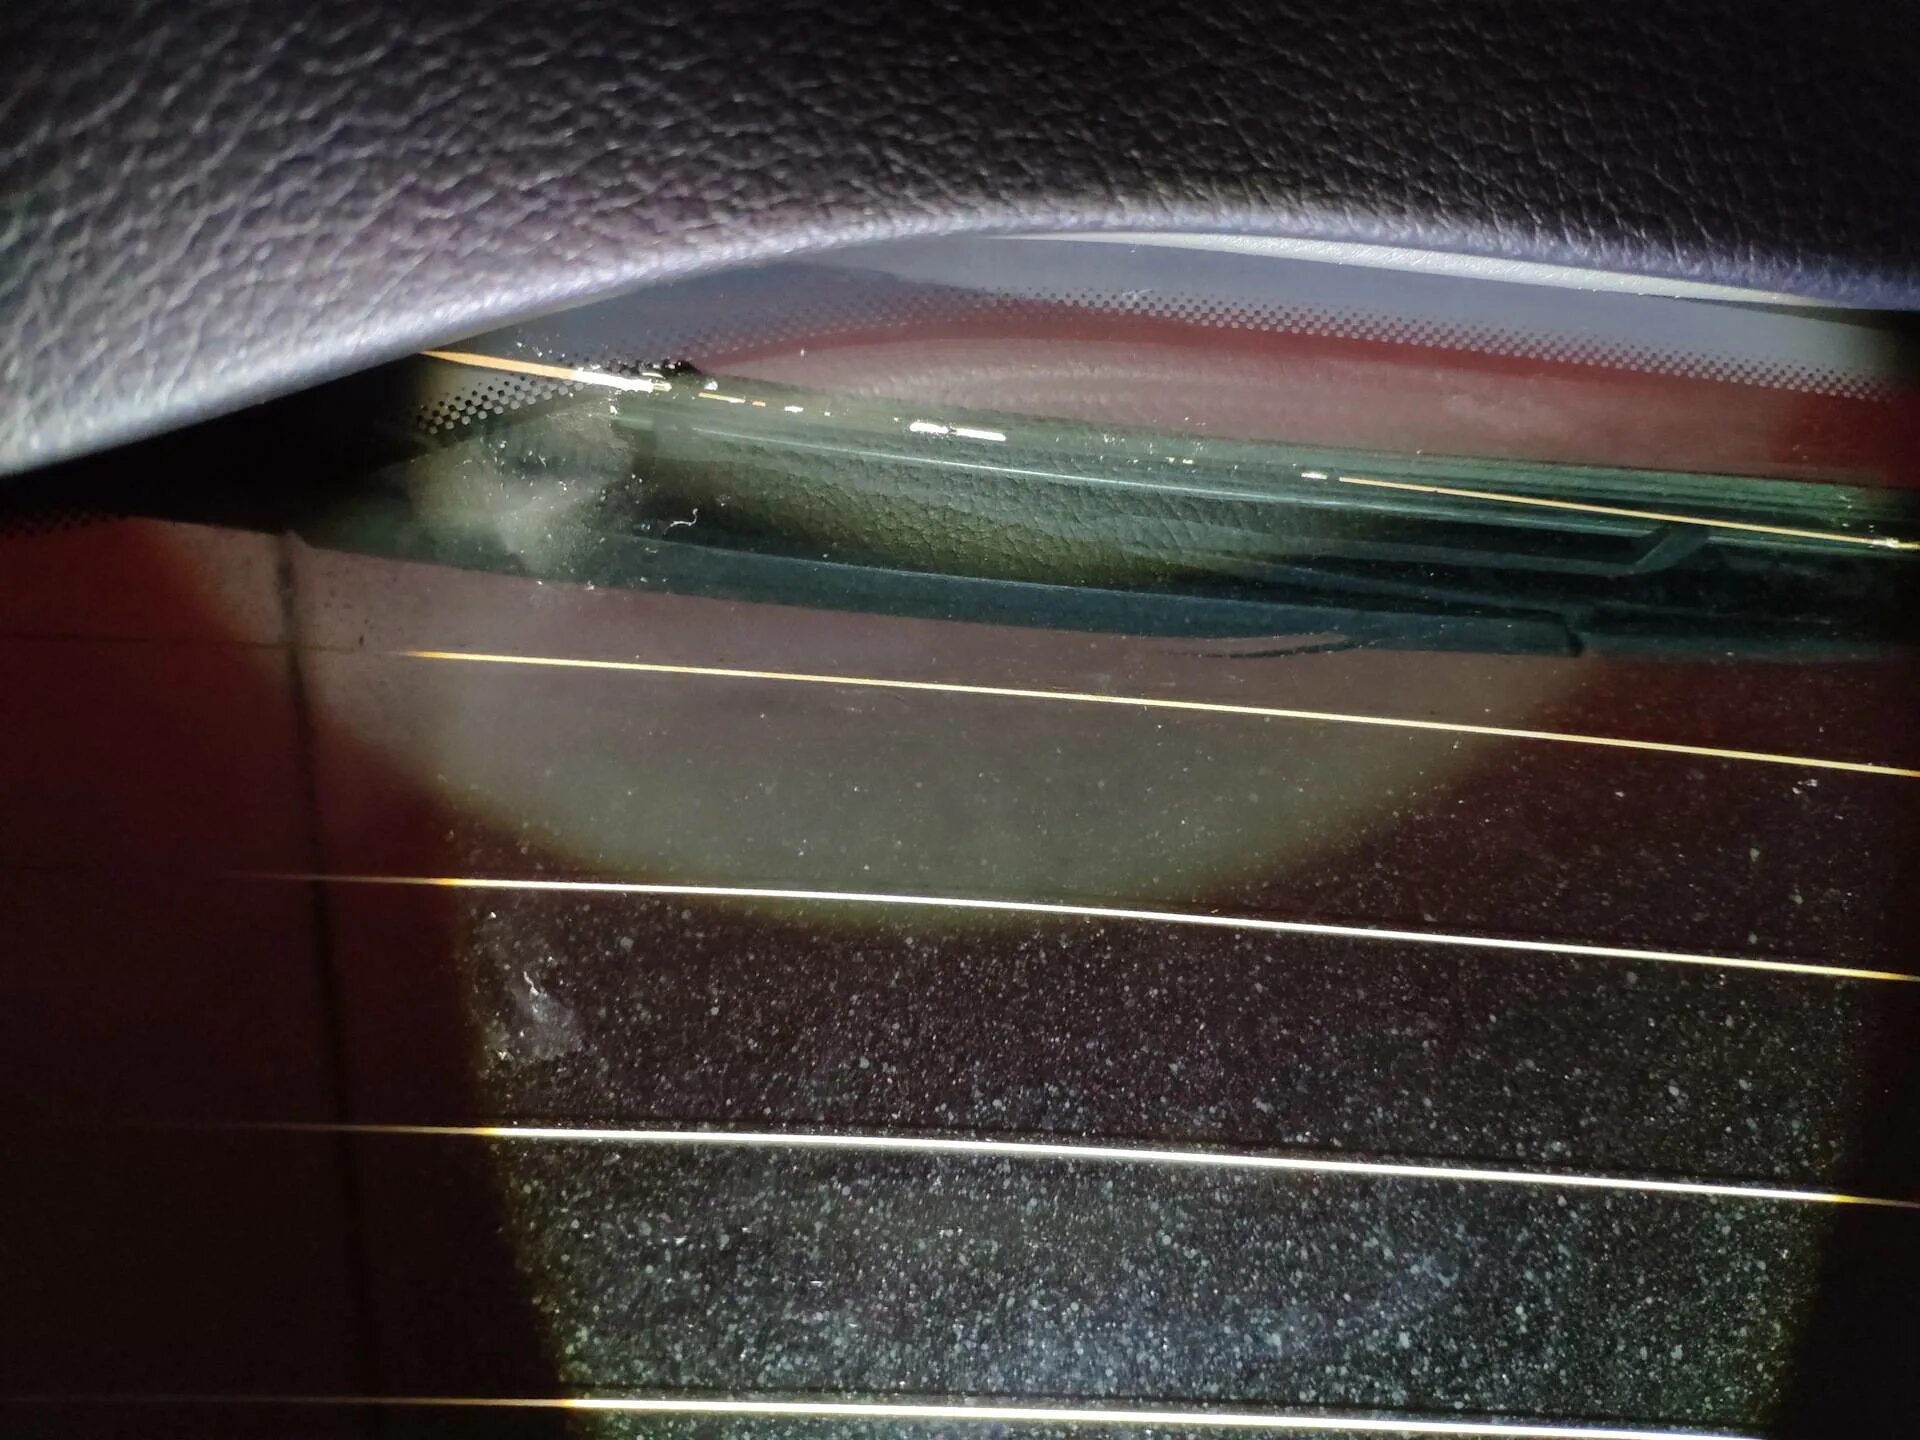 Сетка обогрева заднего стекла ВАЗ 2109. F30 обогрева заднего стекла. Sx4 кз заднего обогревателя стекла. Geely SL H,обогрев заднего стекла. Ремонт нити обогрева стекла